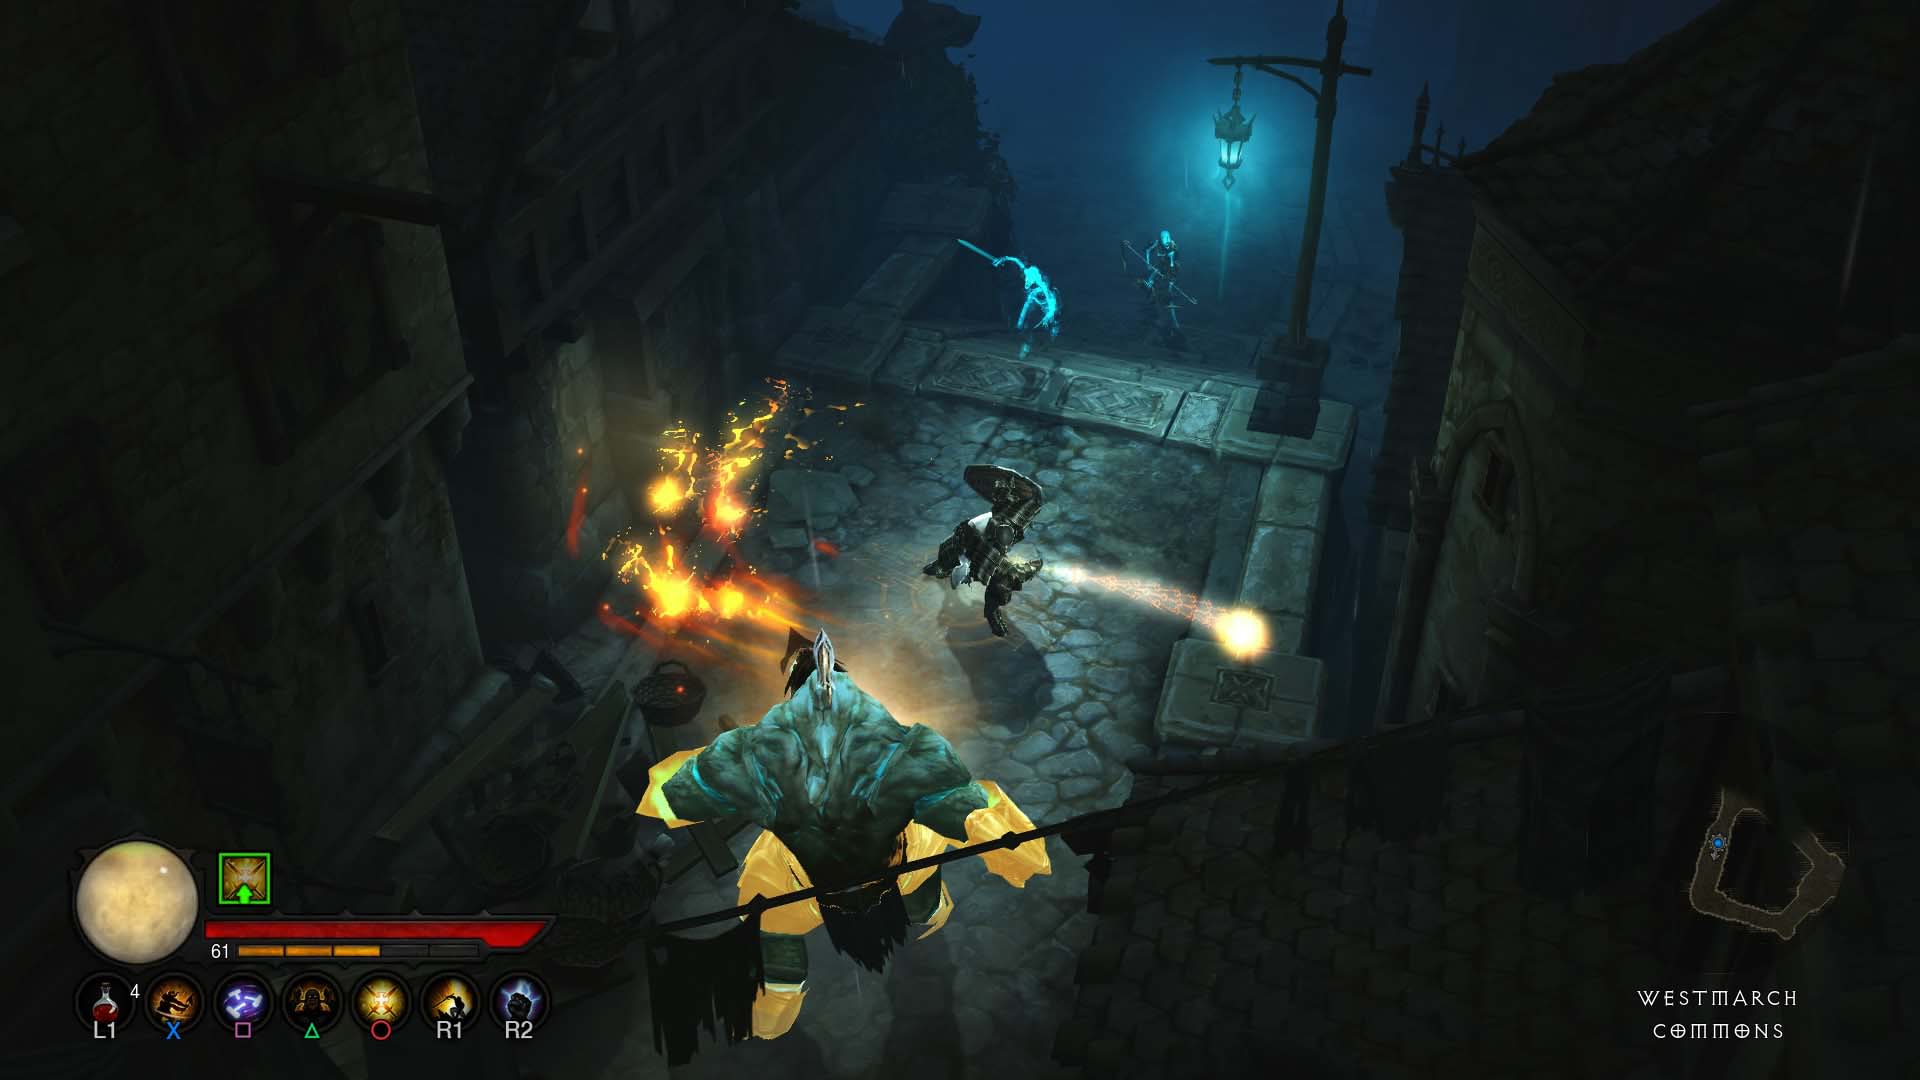 Diablo III Free To Play On Xbox Through September 13th! - News - DiabloFans